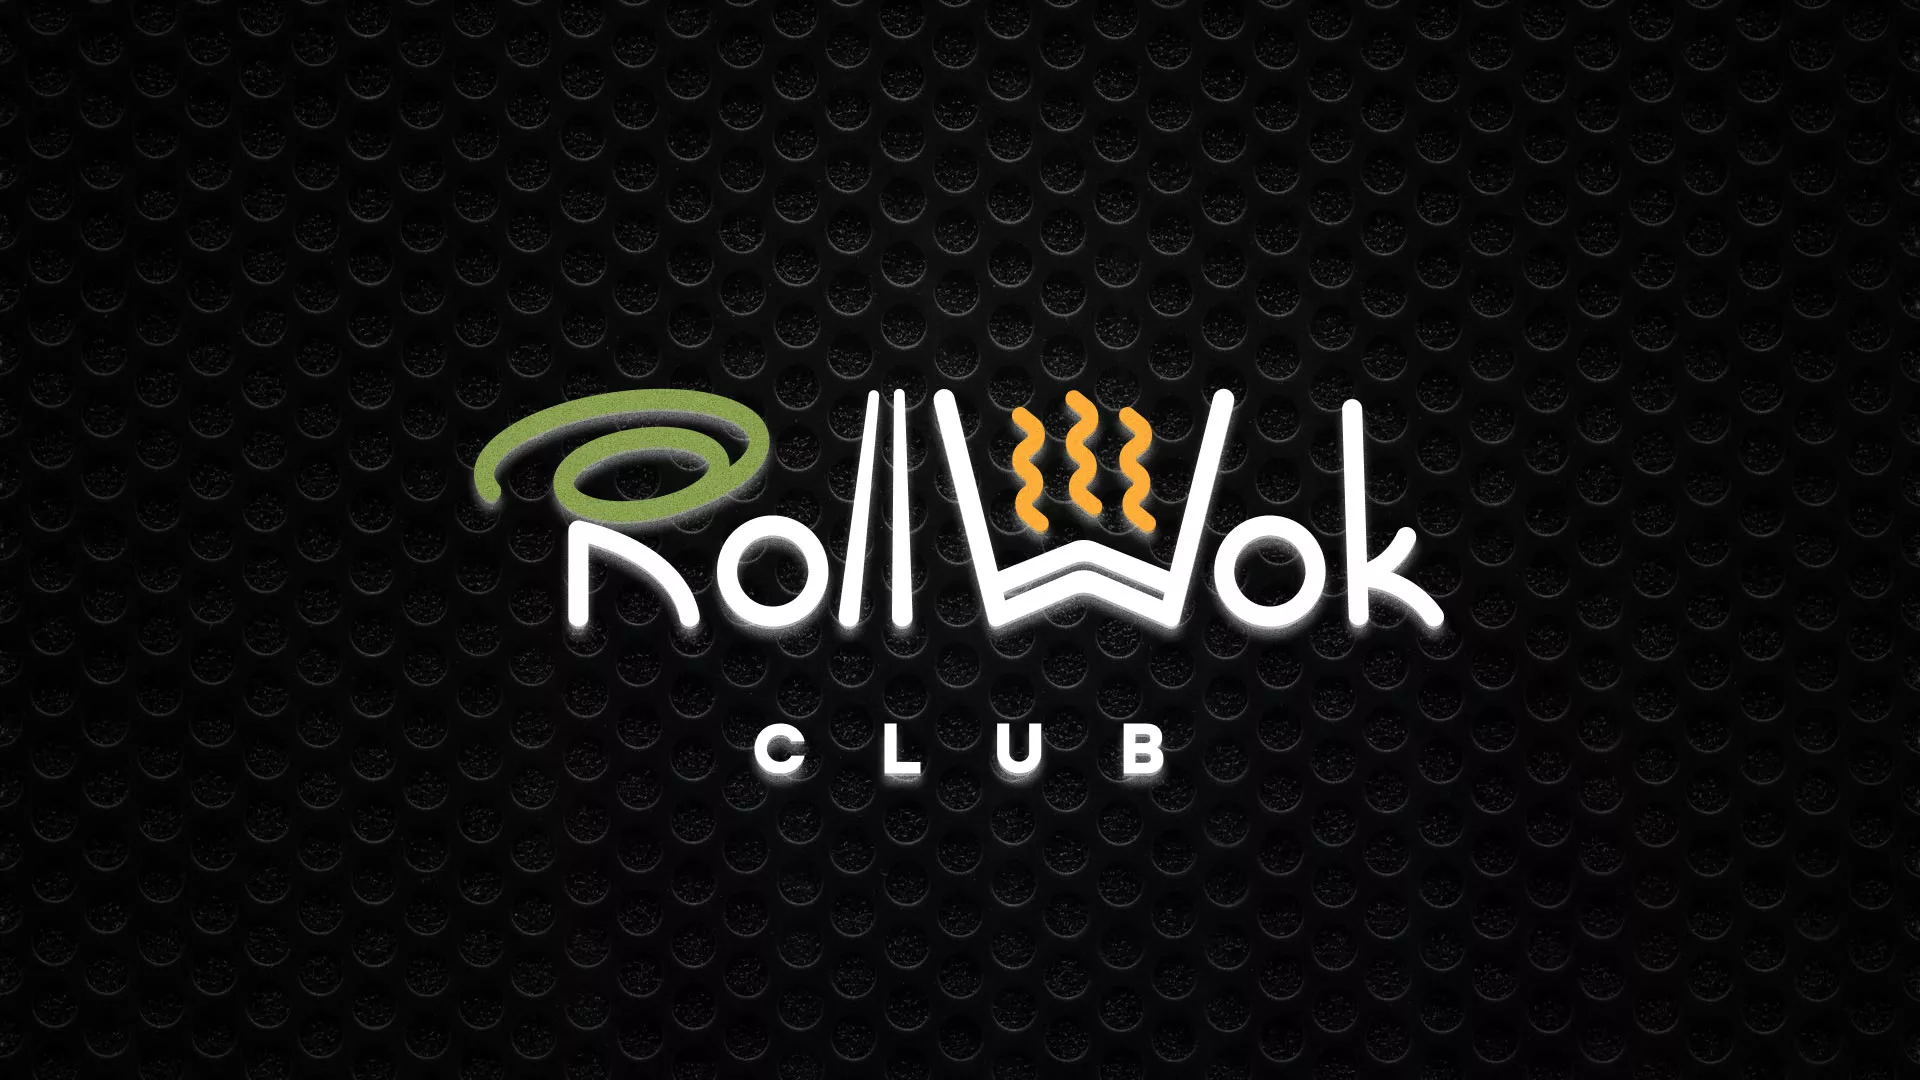 Брендирование торговых точек суши-бара «Roll Wok Club» в Колпино